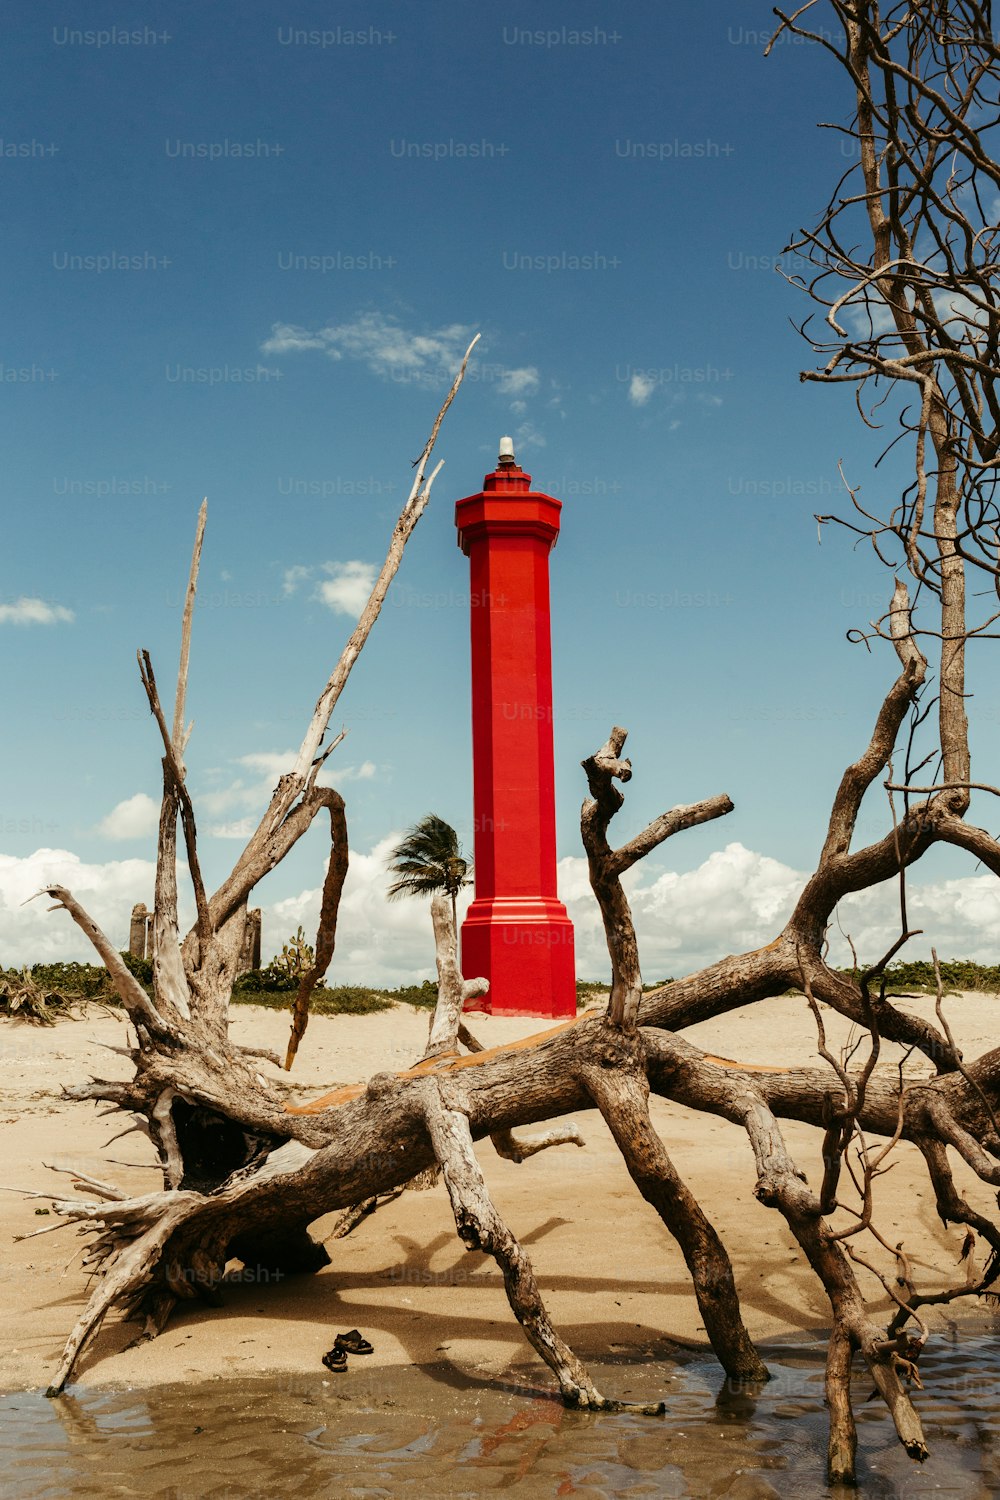 Un faro rojo en una playa de arena junto a árboles muertos